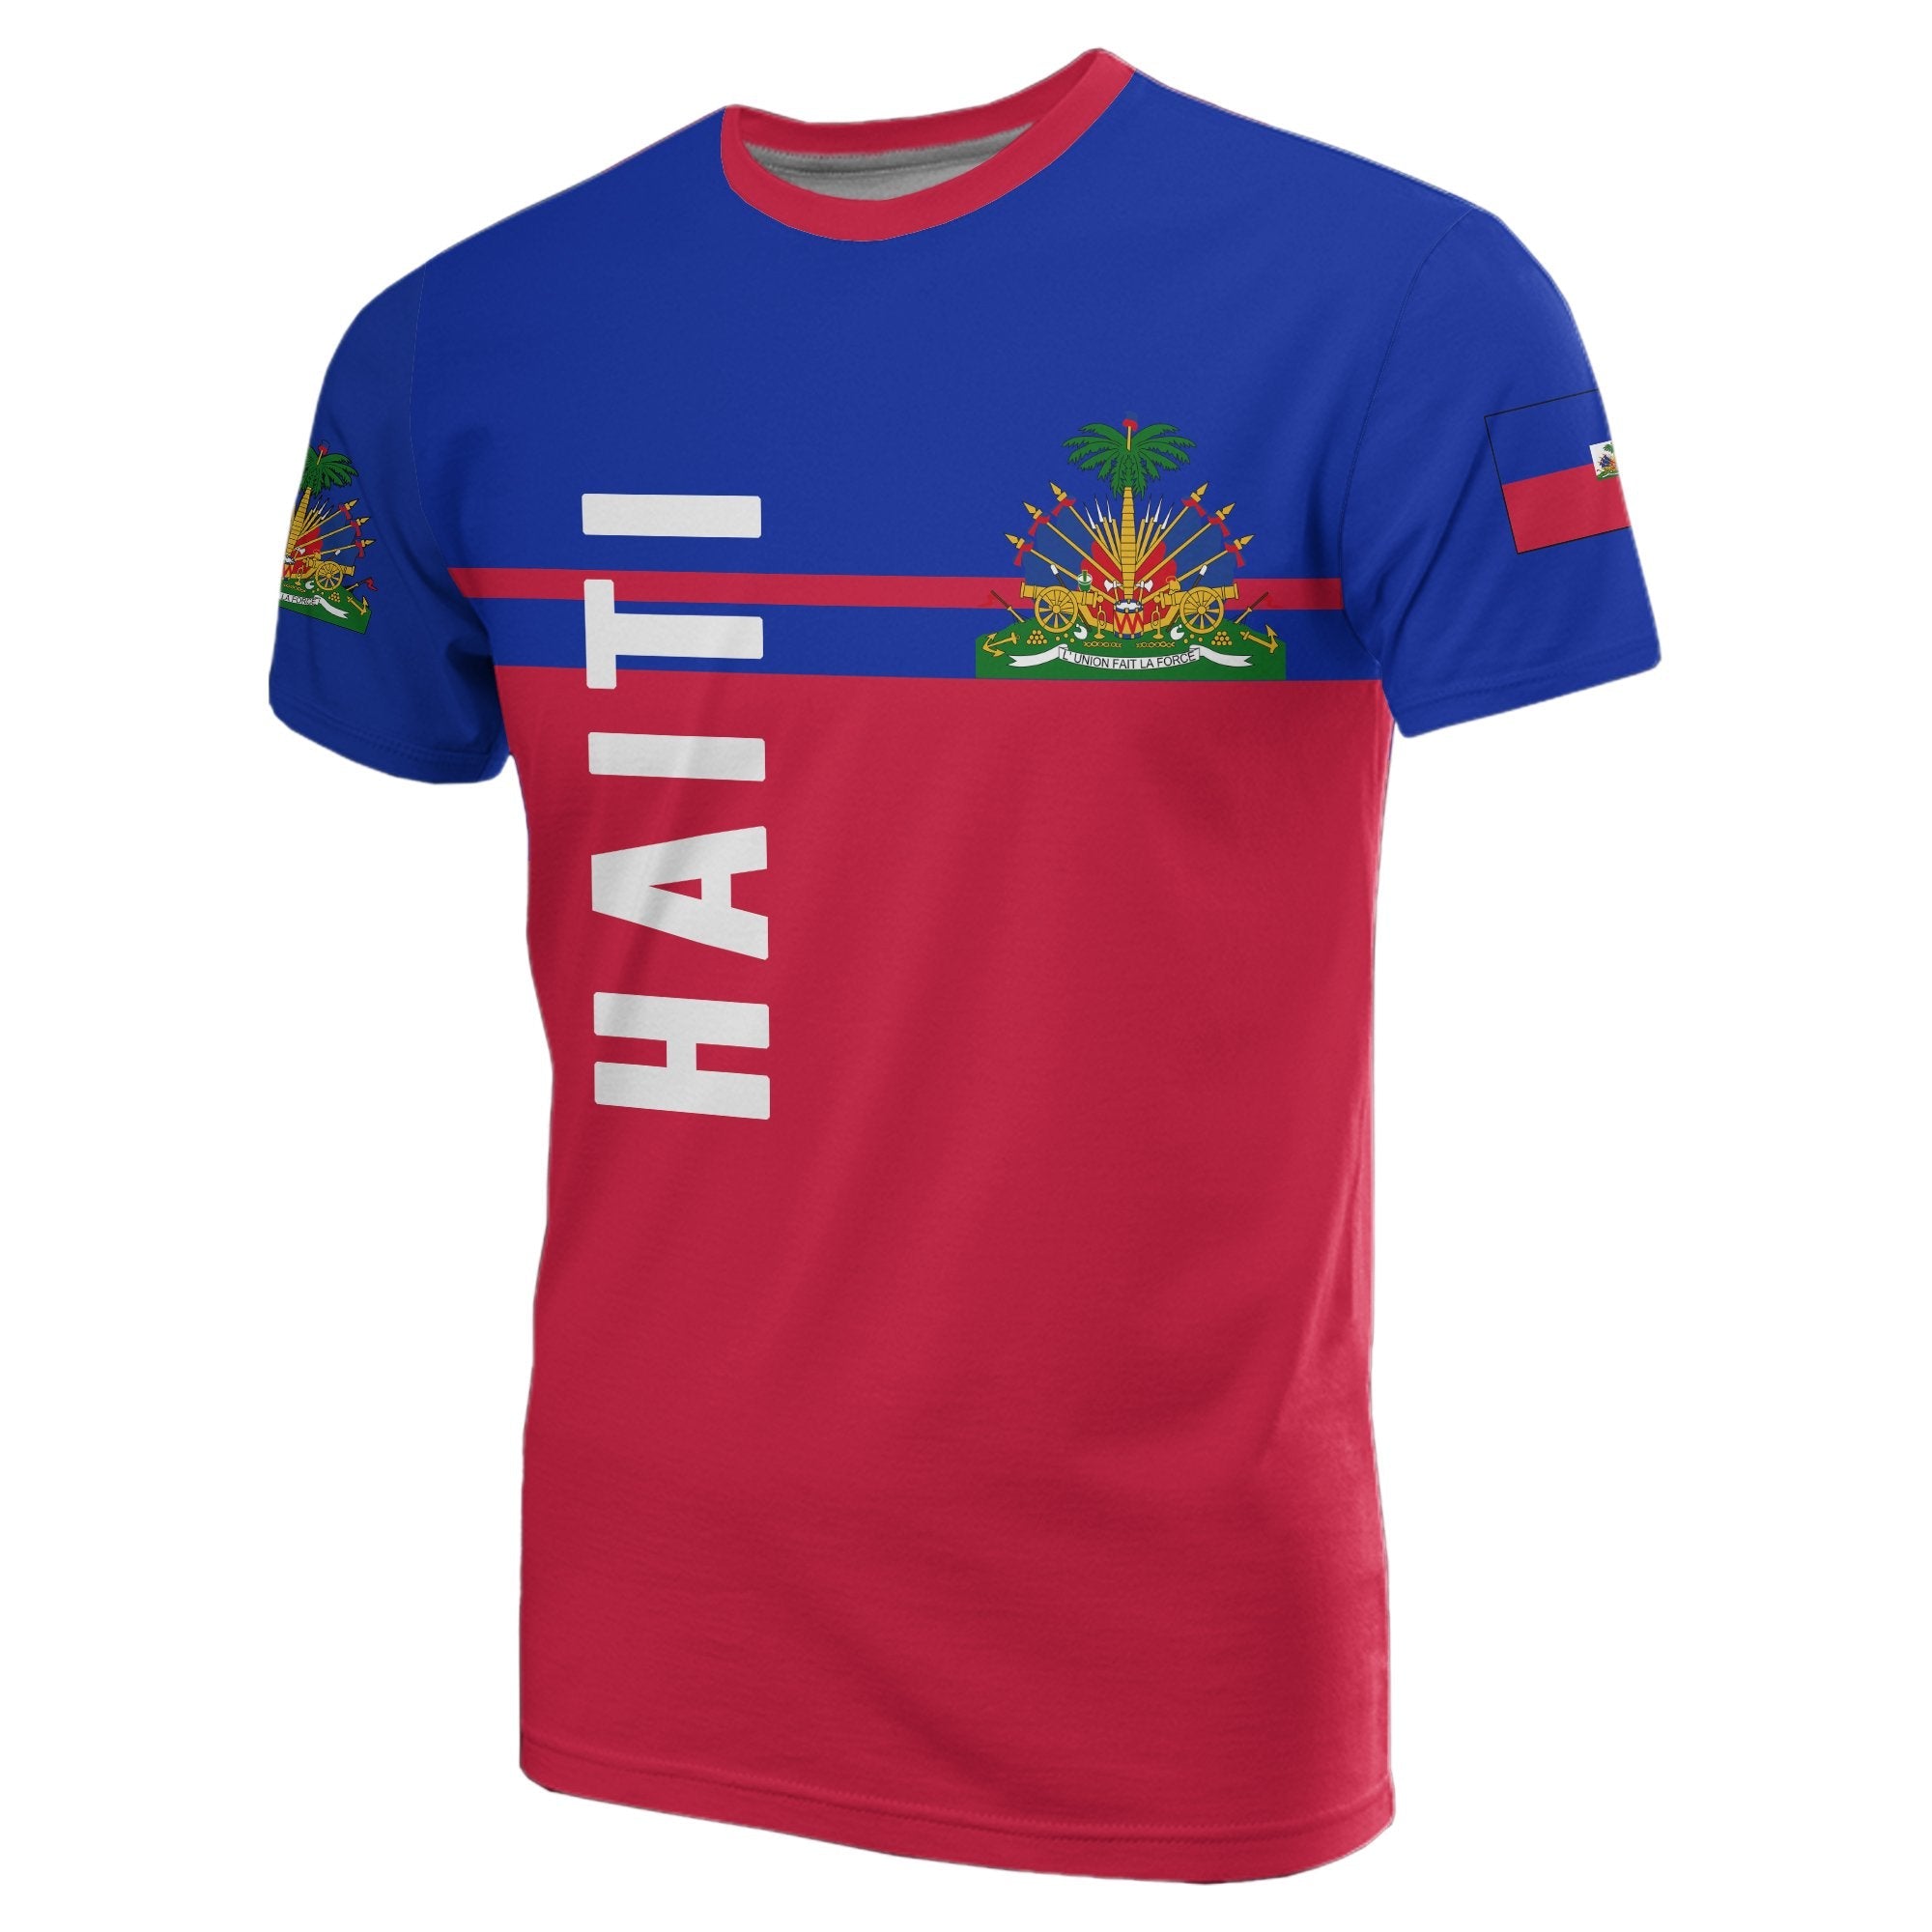 haiti-t-shirt-horizontal-version